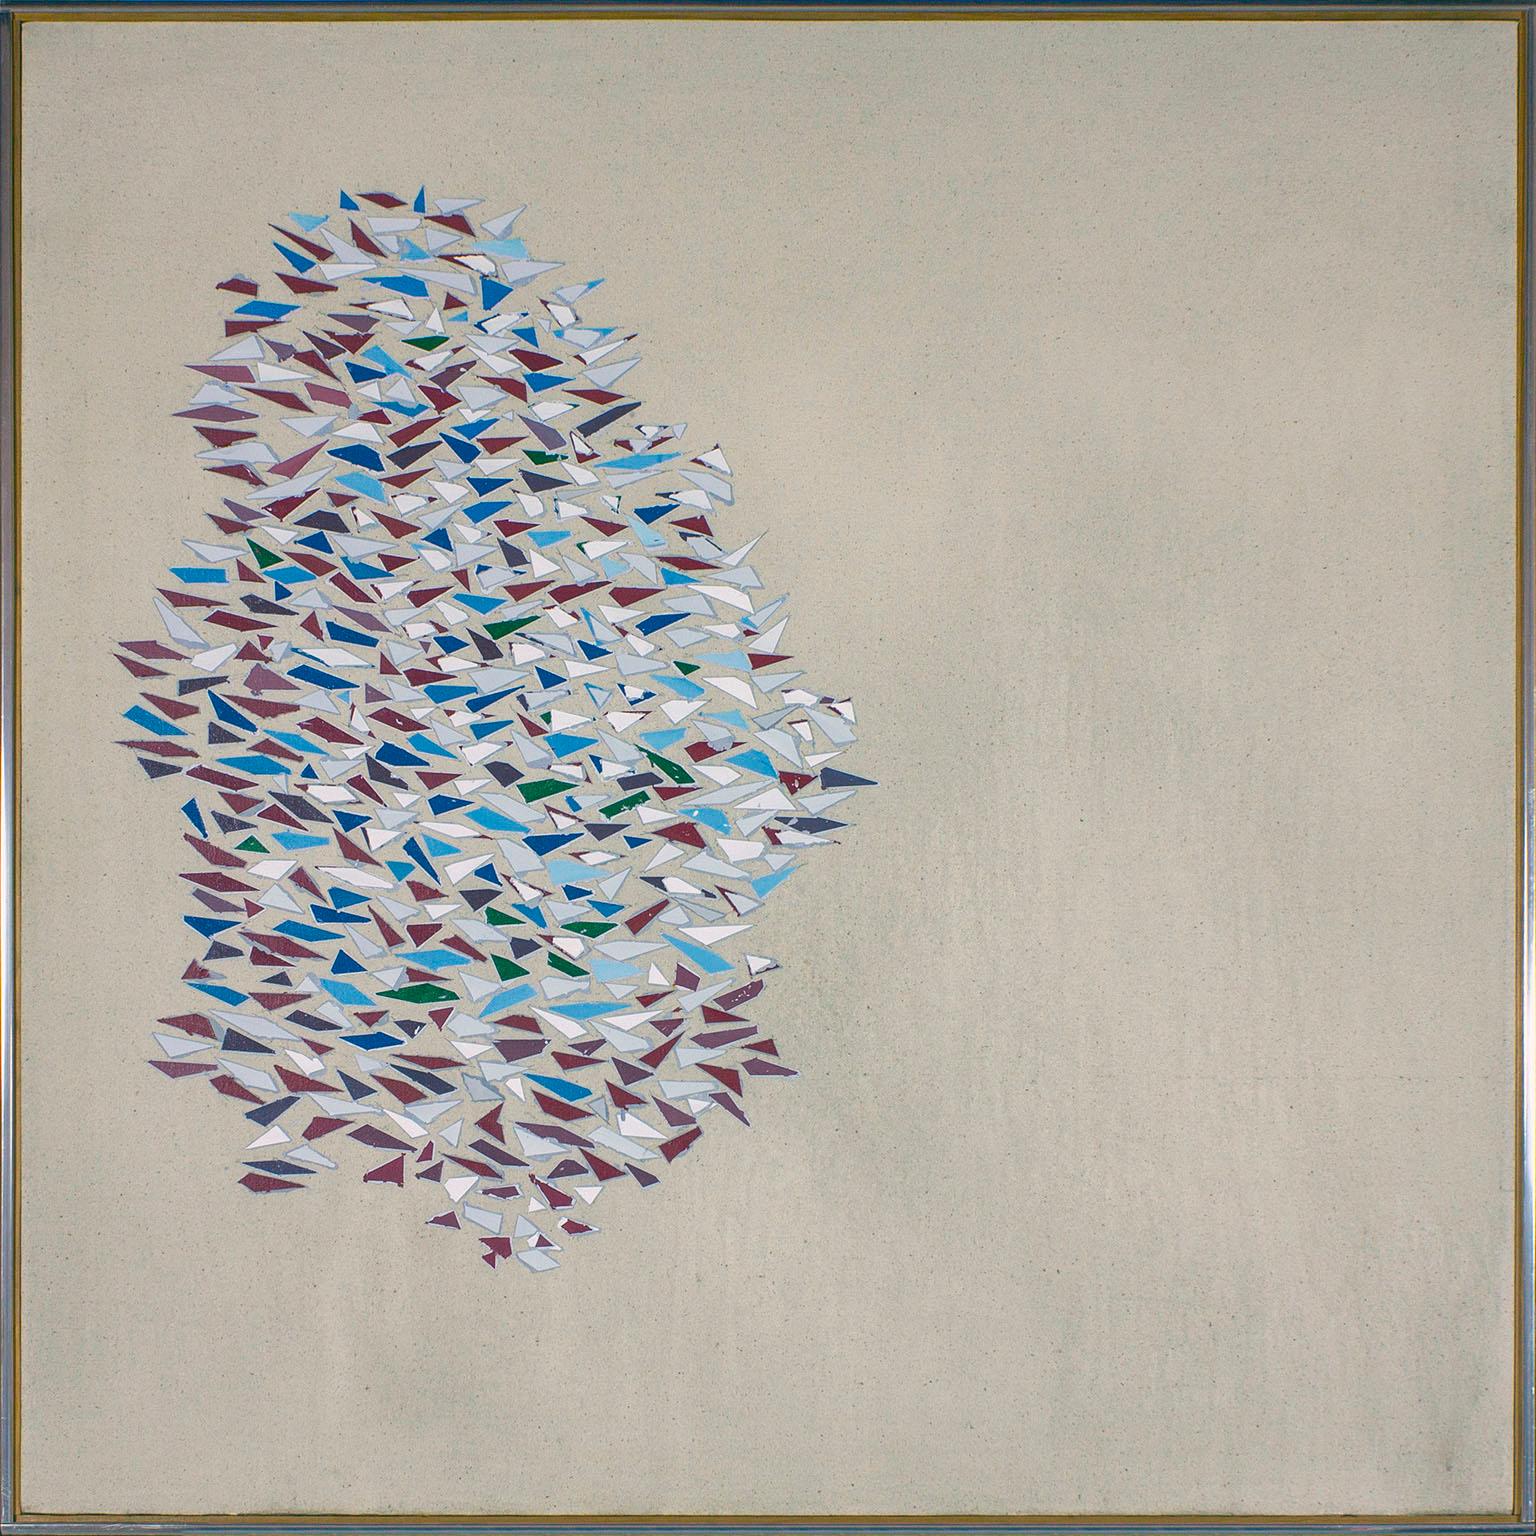 "Colors with Gray" Acryl und Öl auf Leinen abstraktes Gemälde von Künstler Robert Goodnough. Signiert "Colors with Gray" goodnough 1976-1977 Acryl + Öl goodnough 76' - '77 48 x 48 auf der Rückseite. Eine Masse von farbigen Dreiecken und vierseitigen